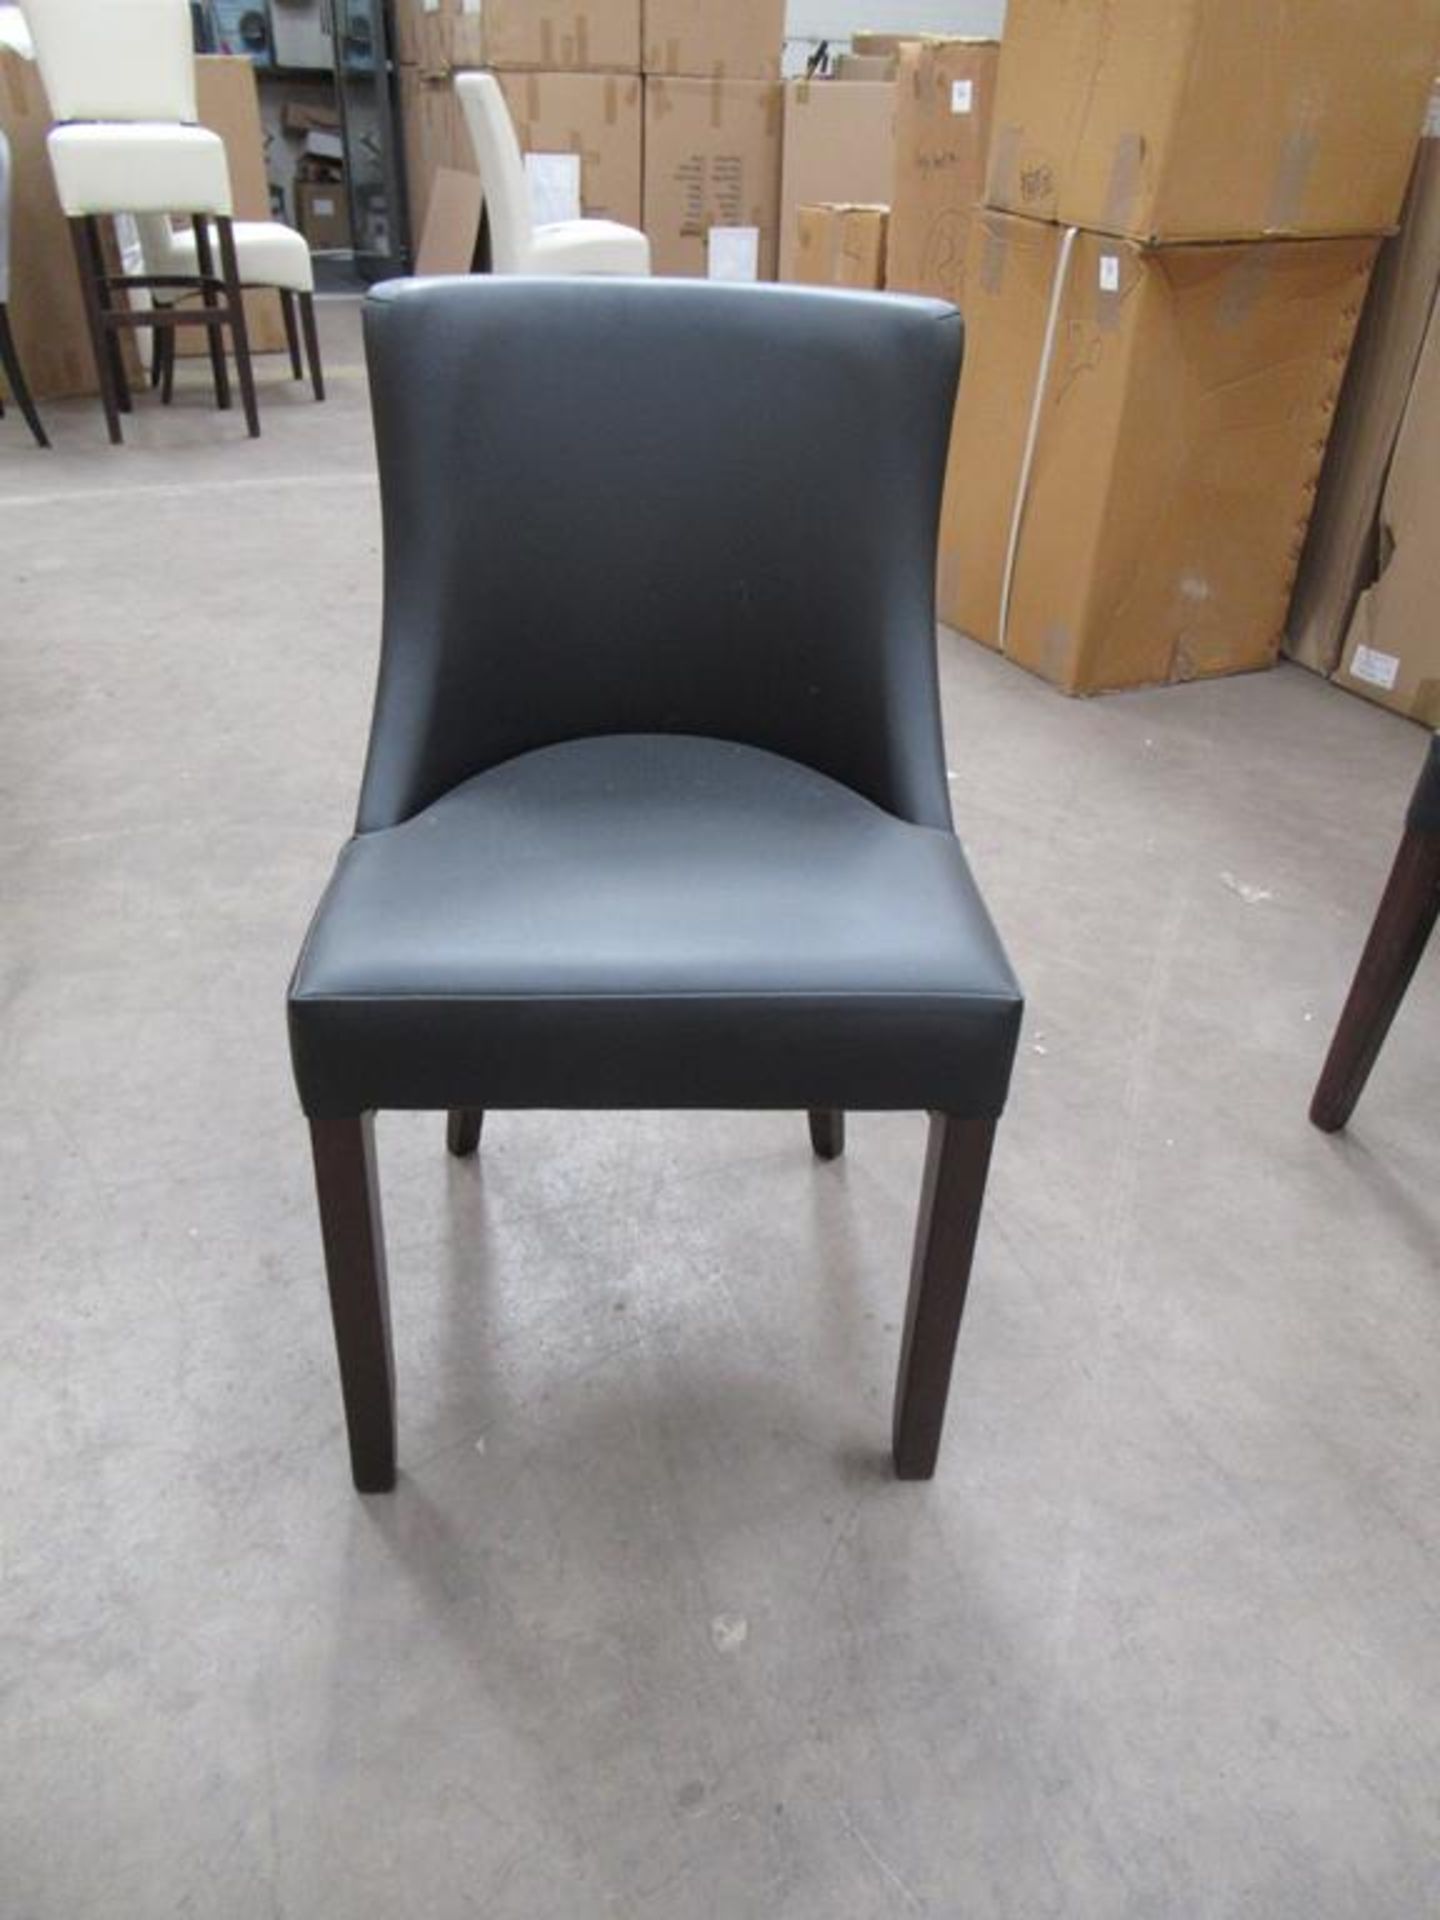 2 x Leona Vena black side chairs